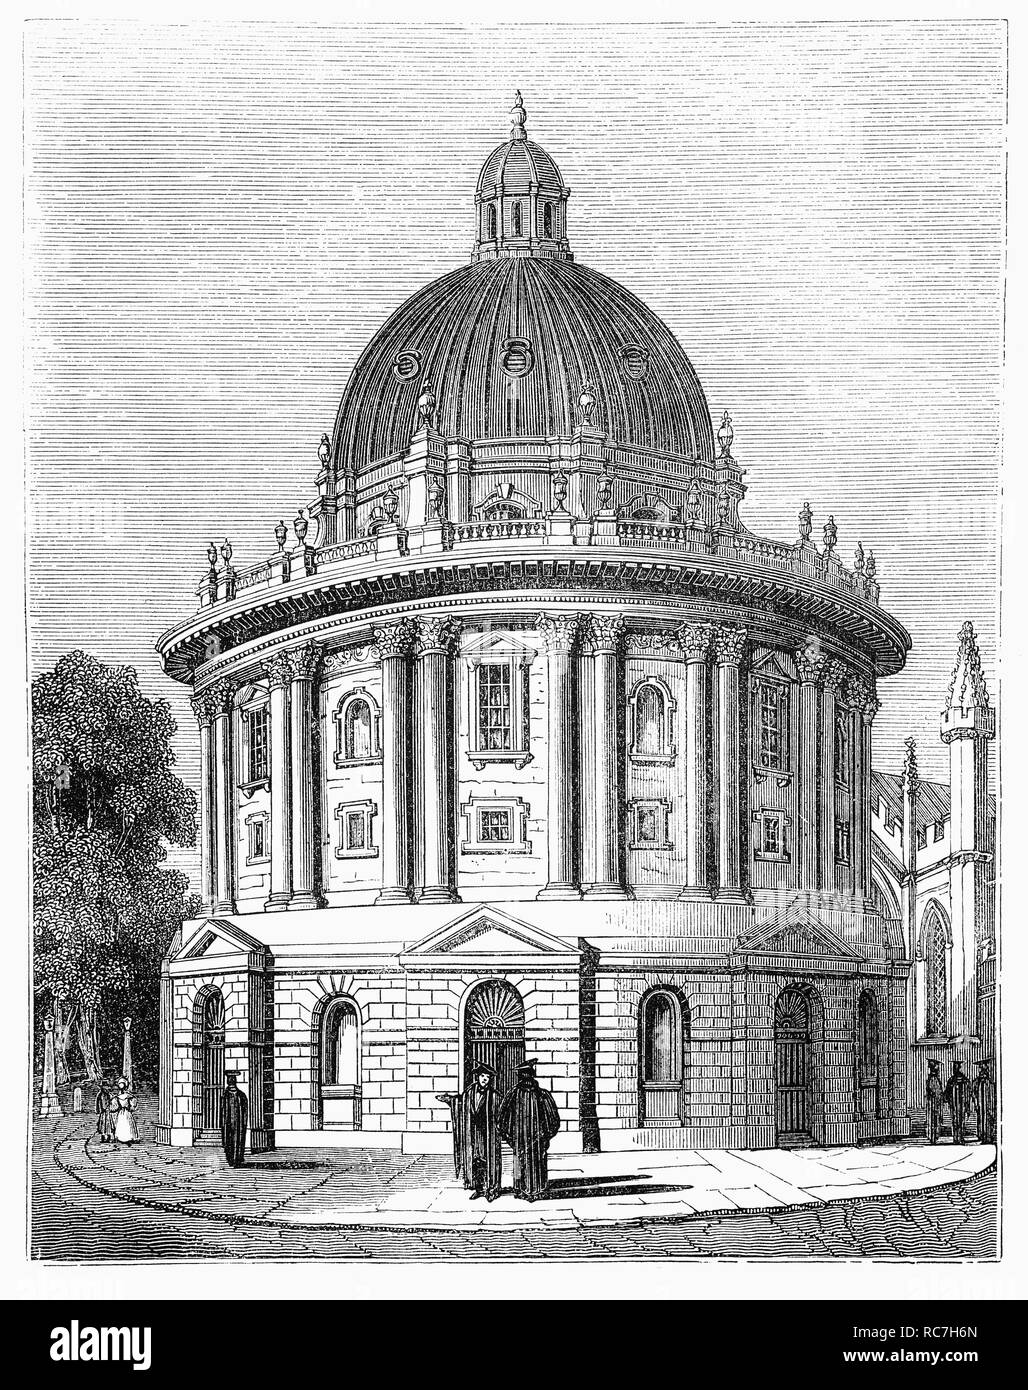 La Bibliothèque Radcliffe pour la recherche et la science dans la ville d'Oxford, en Angleterre, a été ouvert en 1901 à côté de l'Oxford University Museum of Natural History et nommé d'après John Radcliffe, médecin, universitaire, homme politique et un grand bienfaiteur de l'université. Banque D'Images